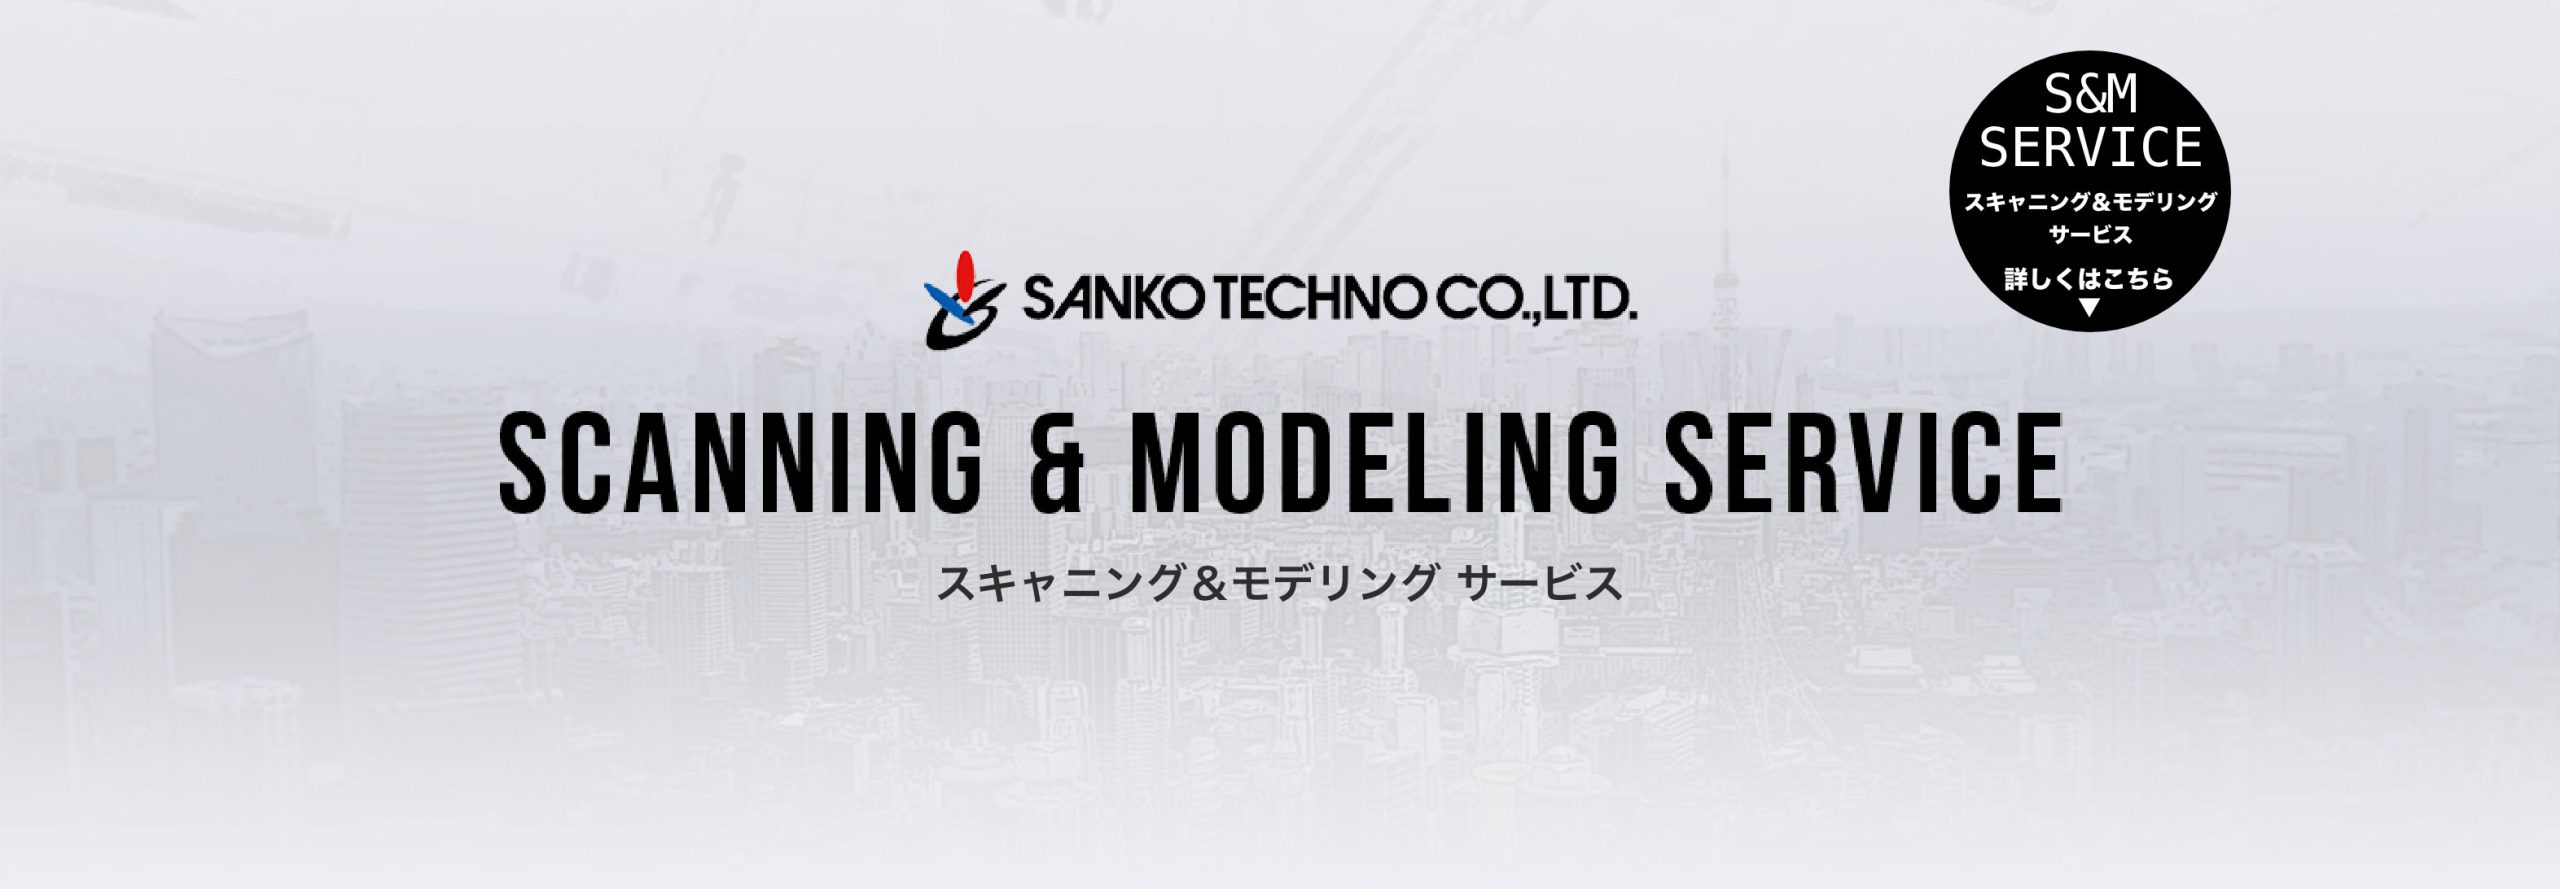 scanning & modeling service